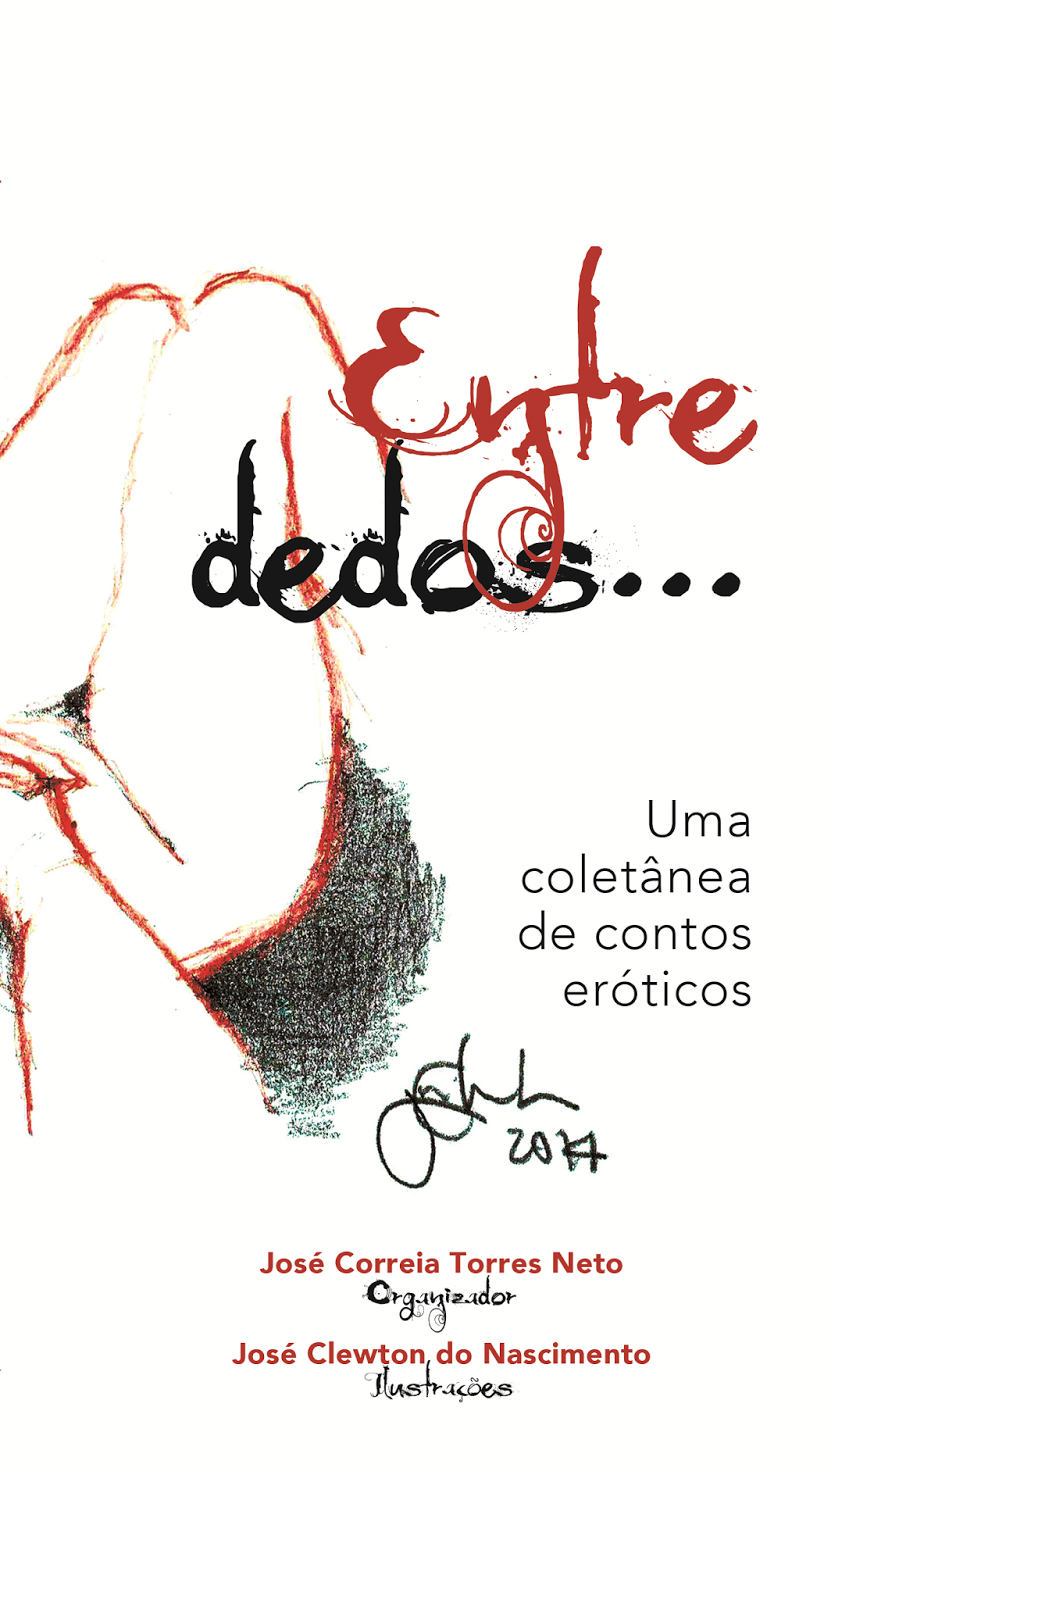 Cefas Carvalho: Coletânea de contos eróticos potiguares “Entre dedos” se  encontra à venda pelo Selo Caravela